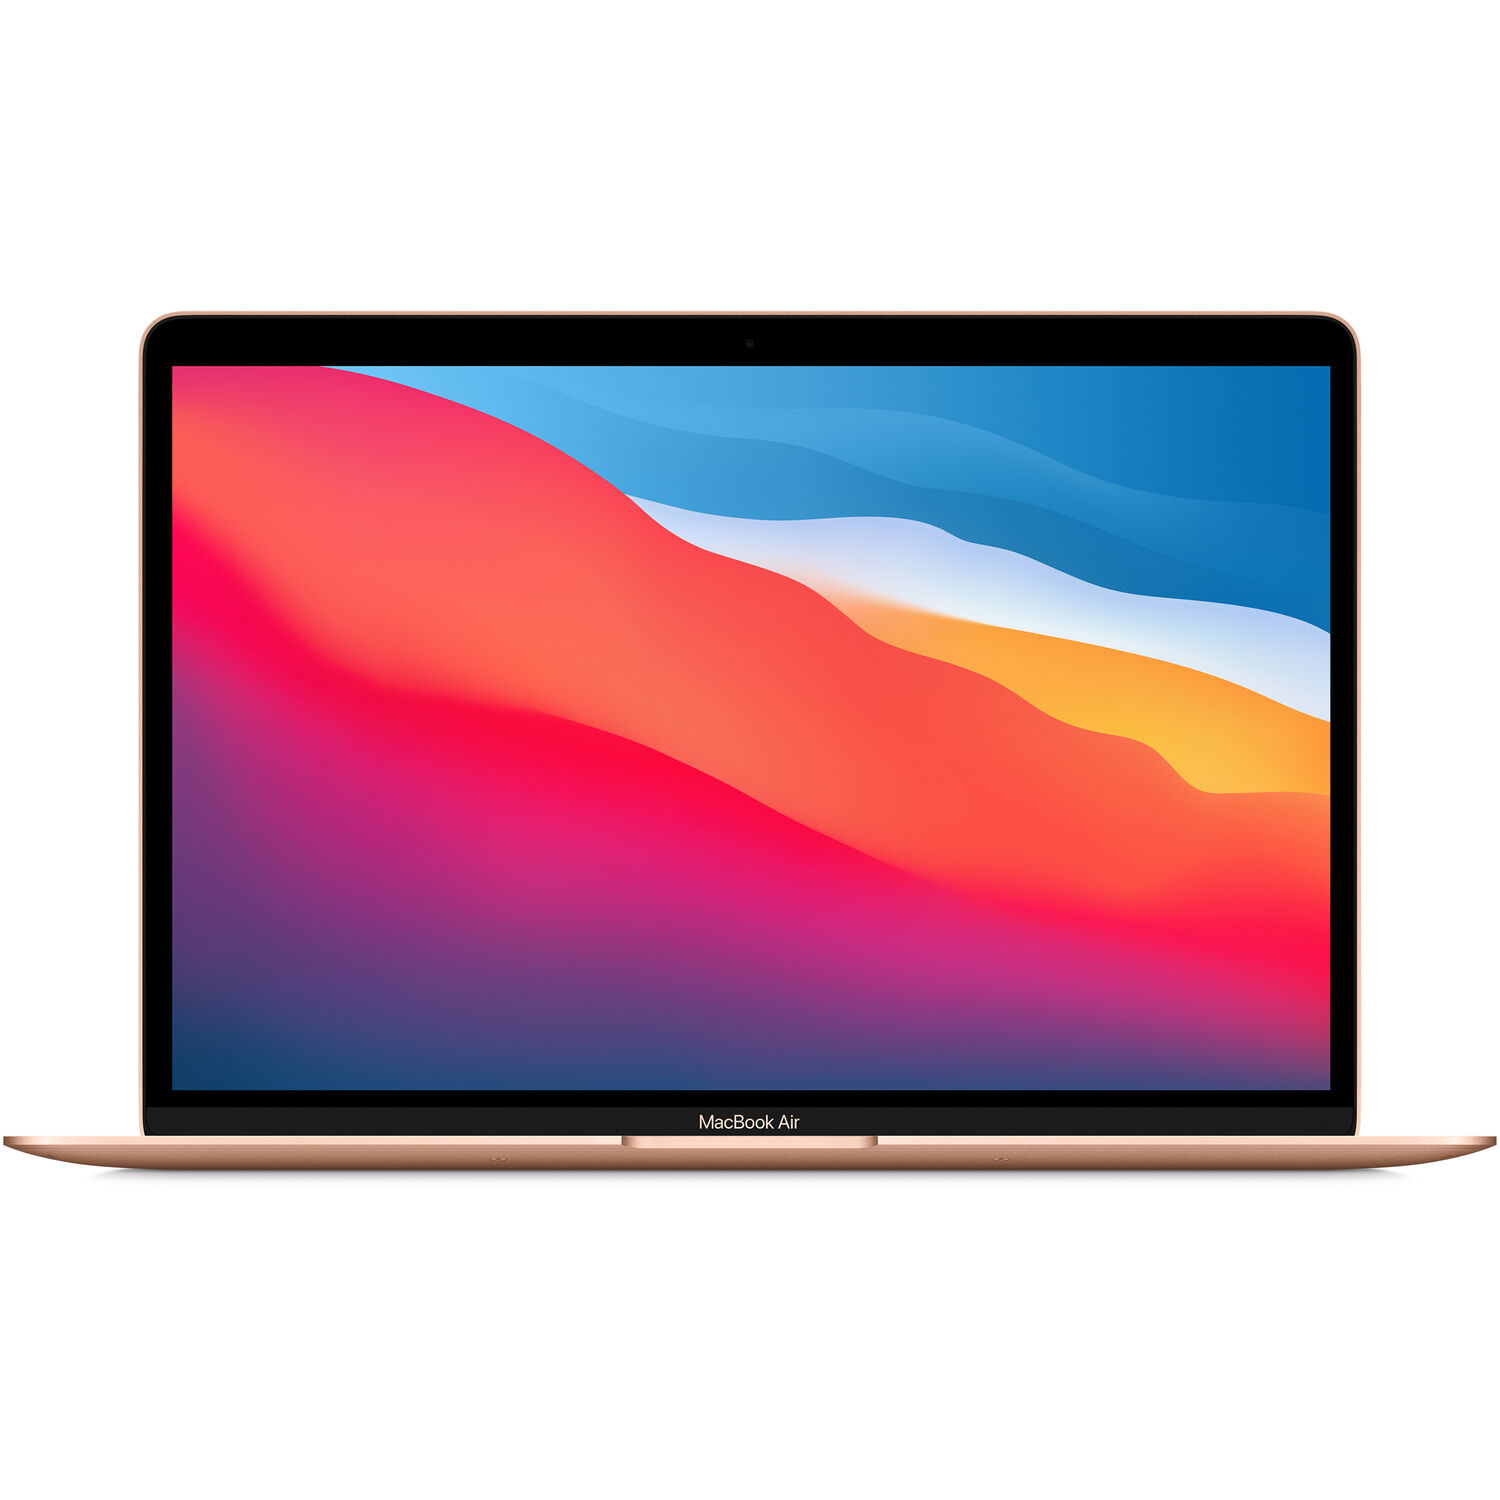 Ordenador Portátil Apple 13.3 Macbook Air con Chip M1 y Pantalla Retina 2020 Color Dorado